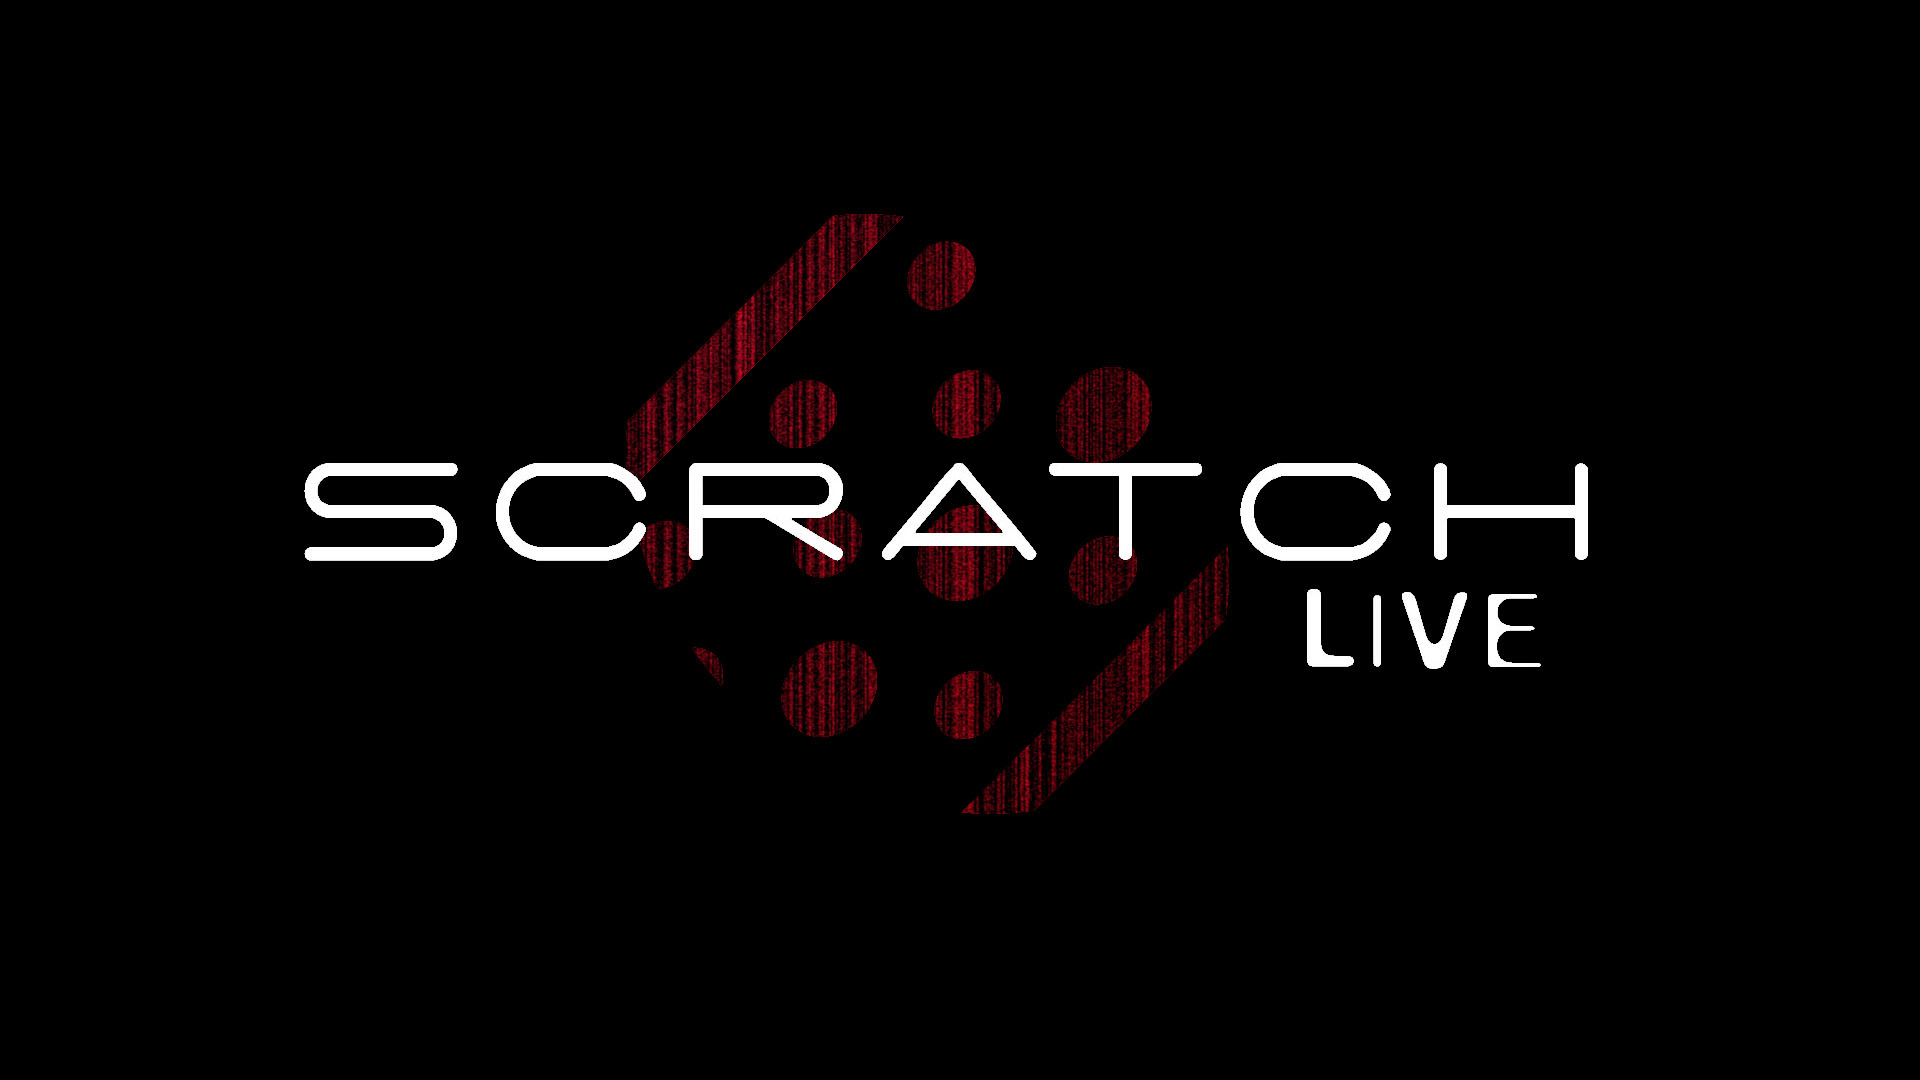 serato scratch live video